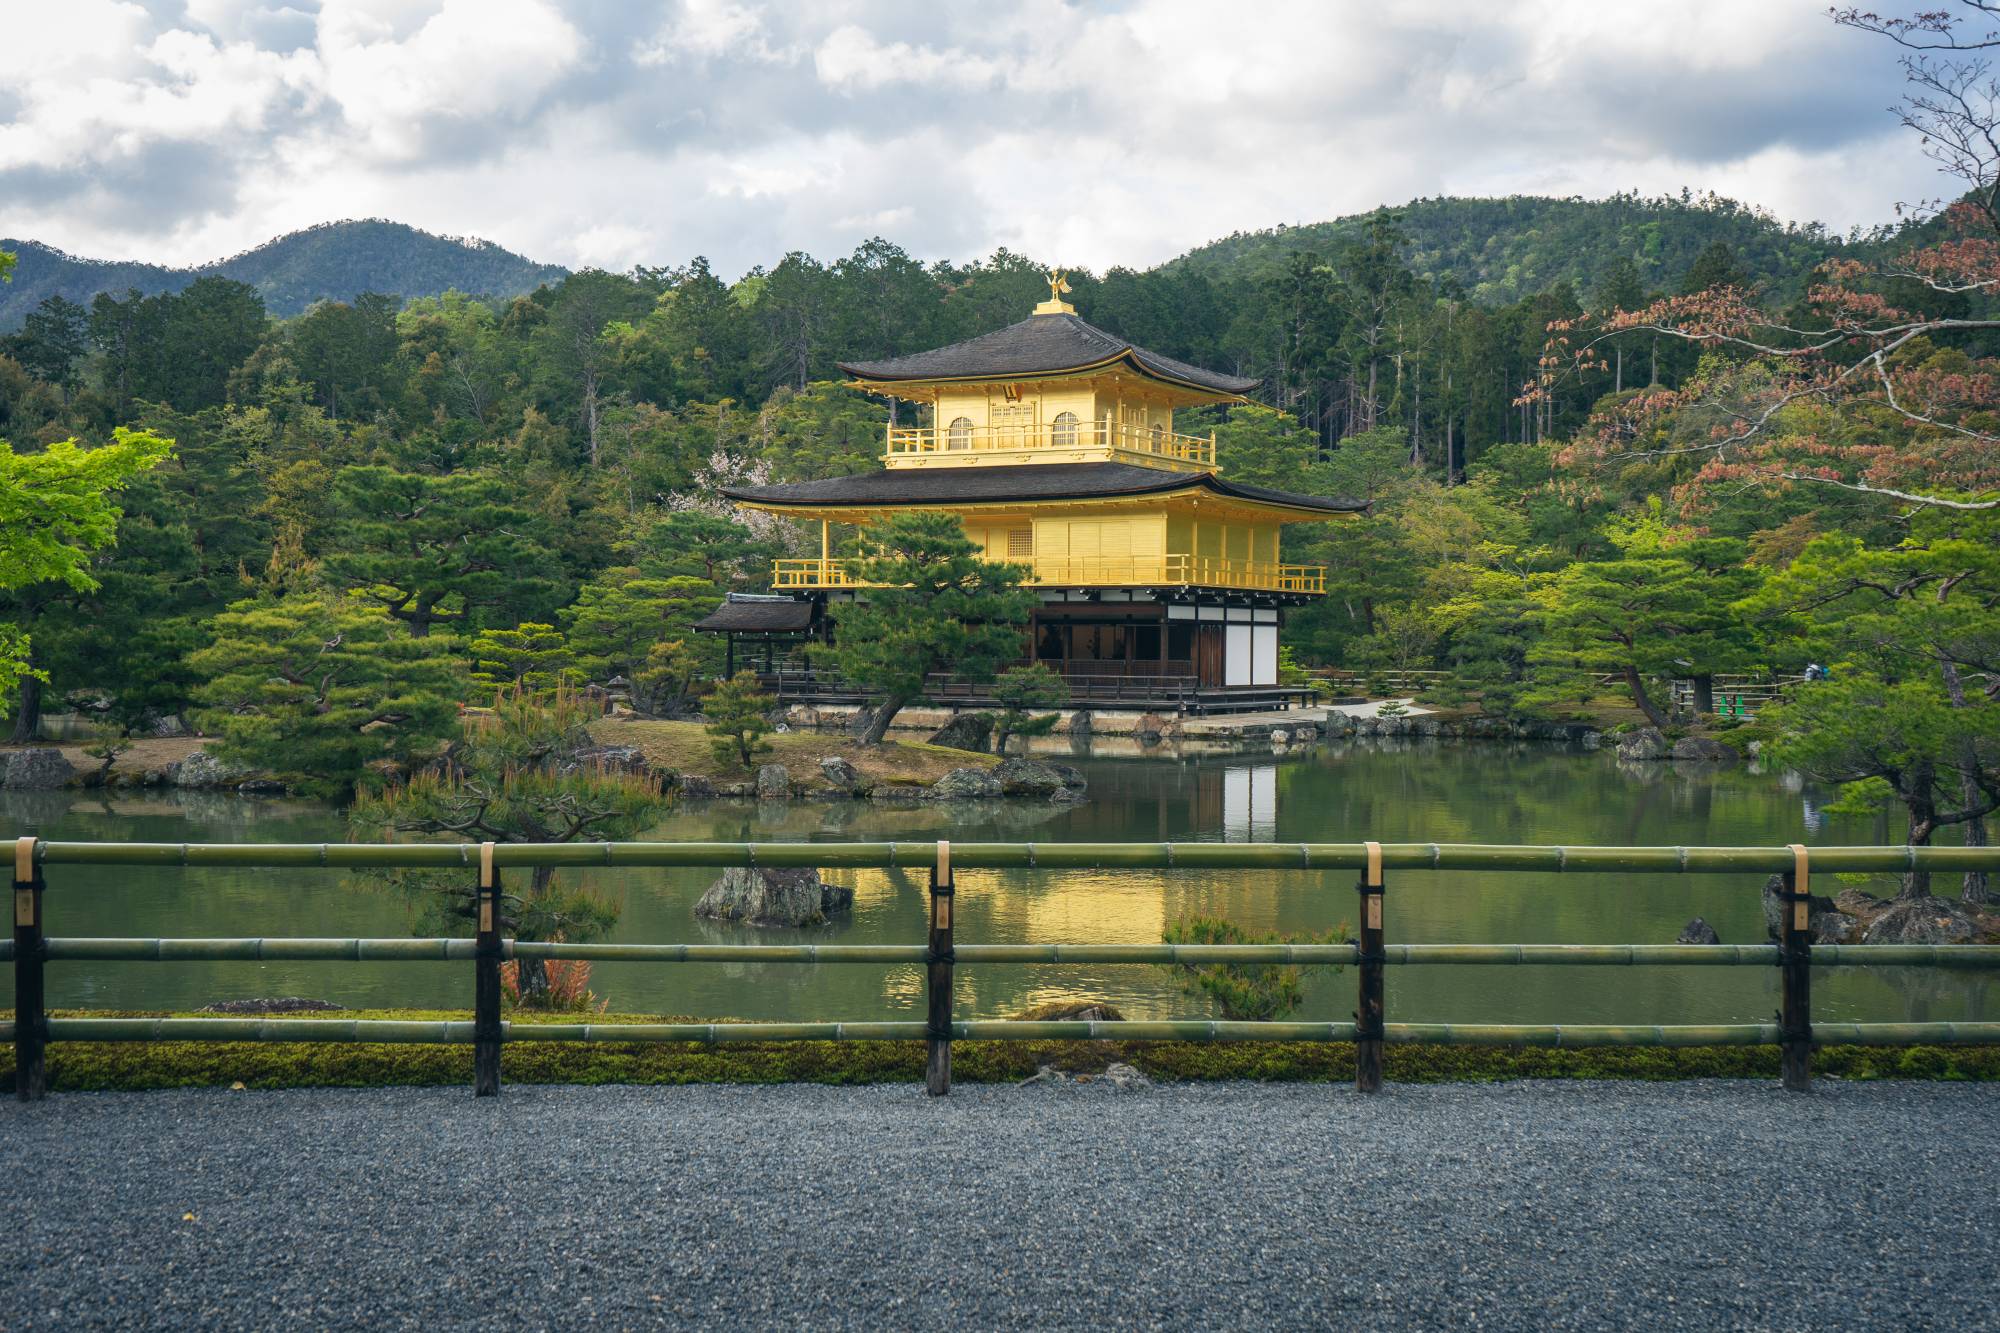 Tham quan Kyoto - một thành phố xinh đẹp với những đền đài truyền thống, vườn tịnh tâm và những con đường rực rỡ sắc màu.